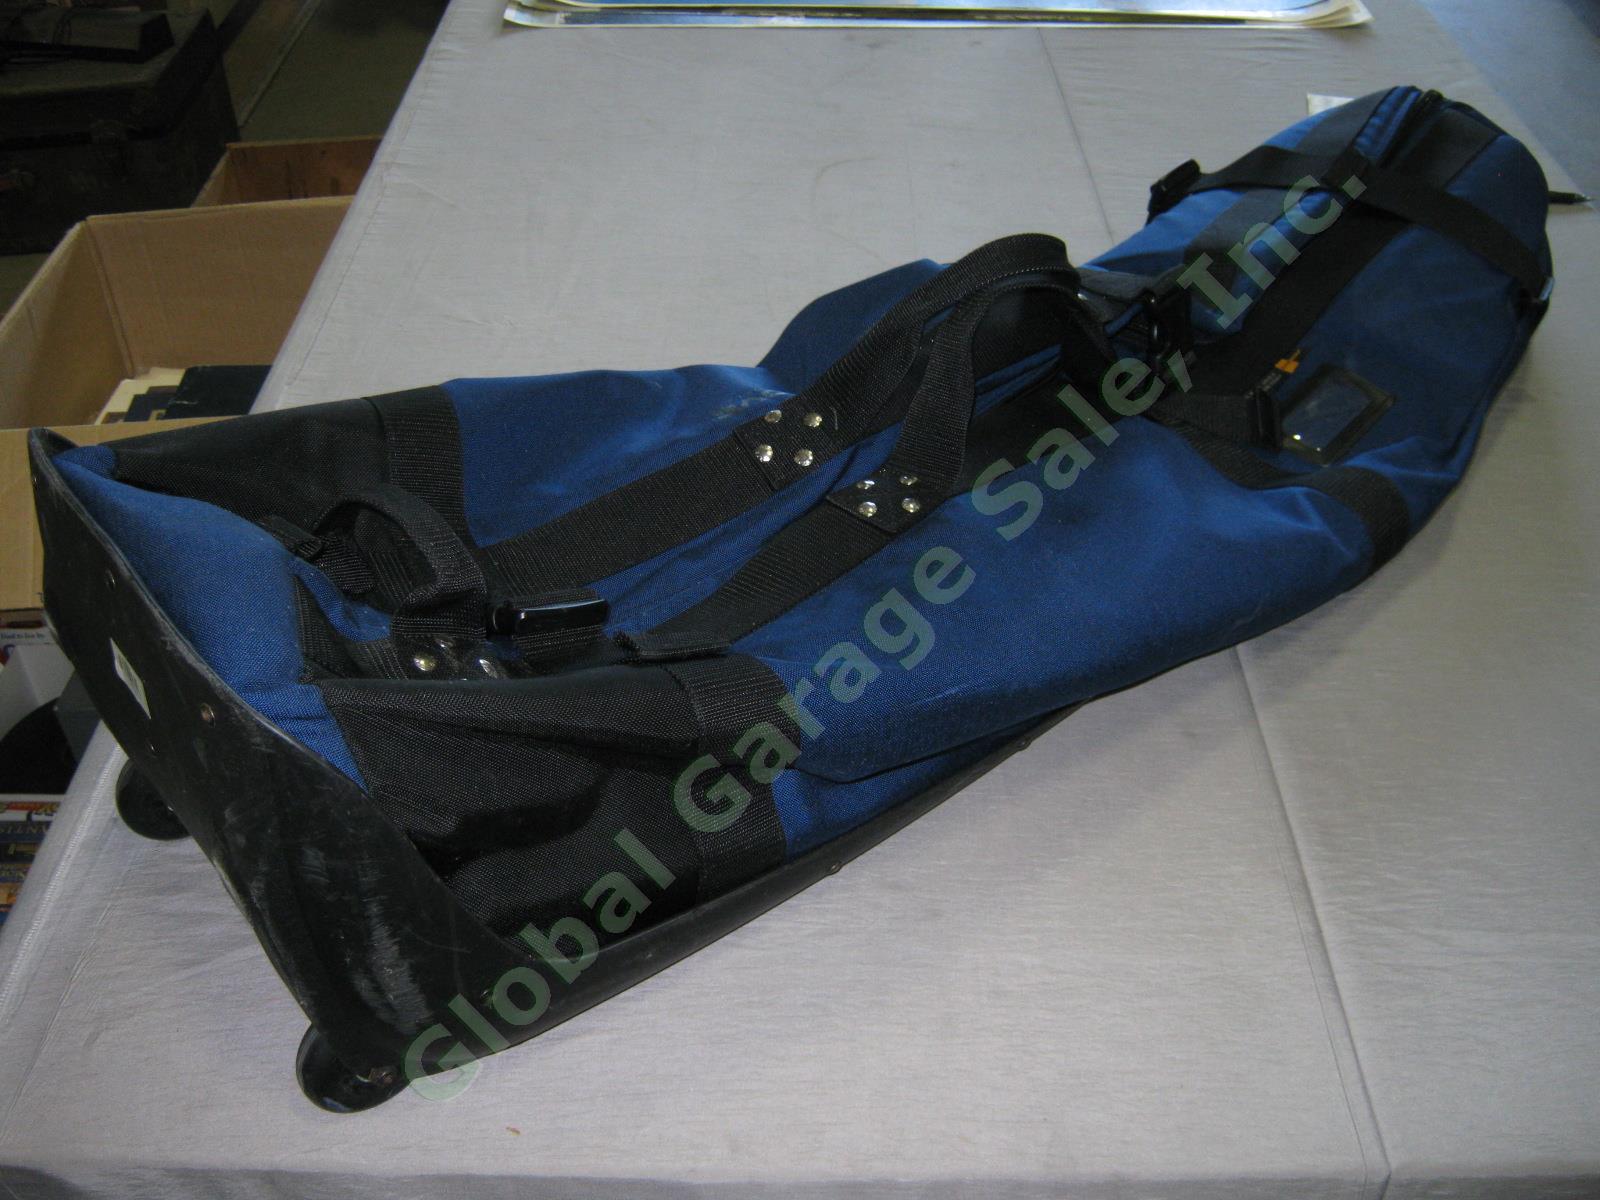 Navy Club Glove Burst Proof Travel Golf Club Bag With Wheels 2 II Free Stiff Arm 3